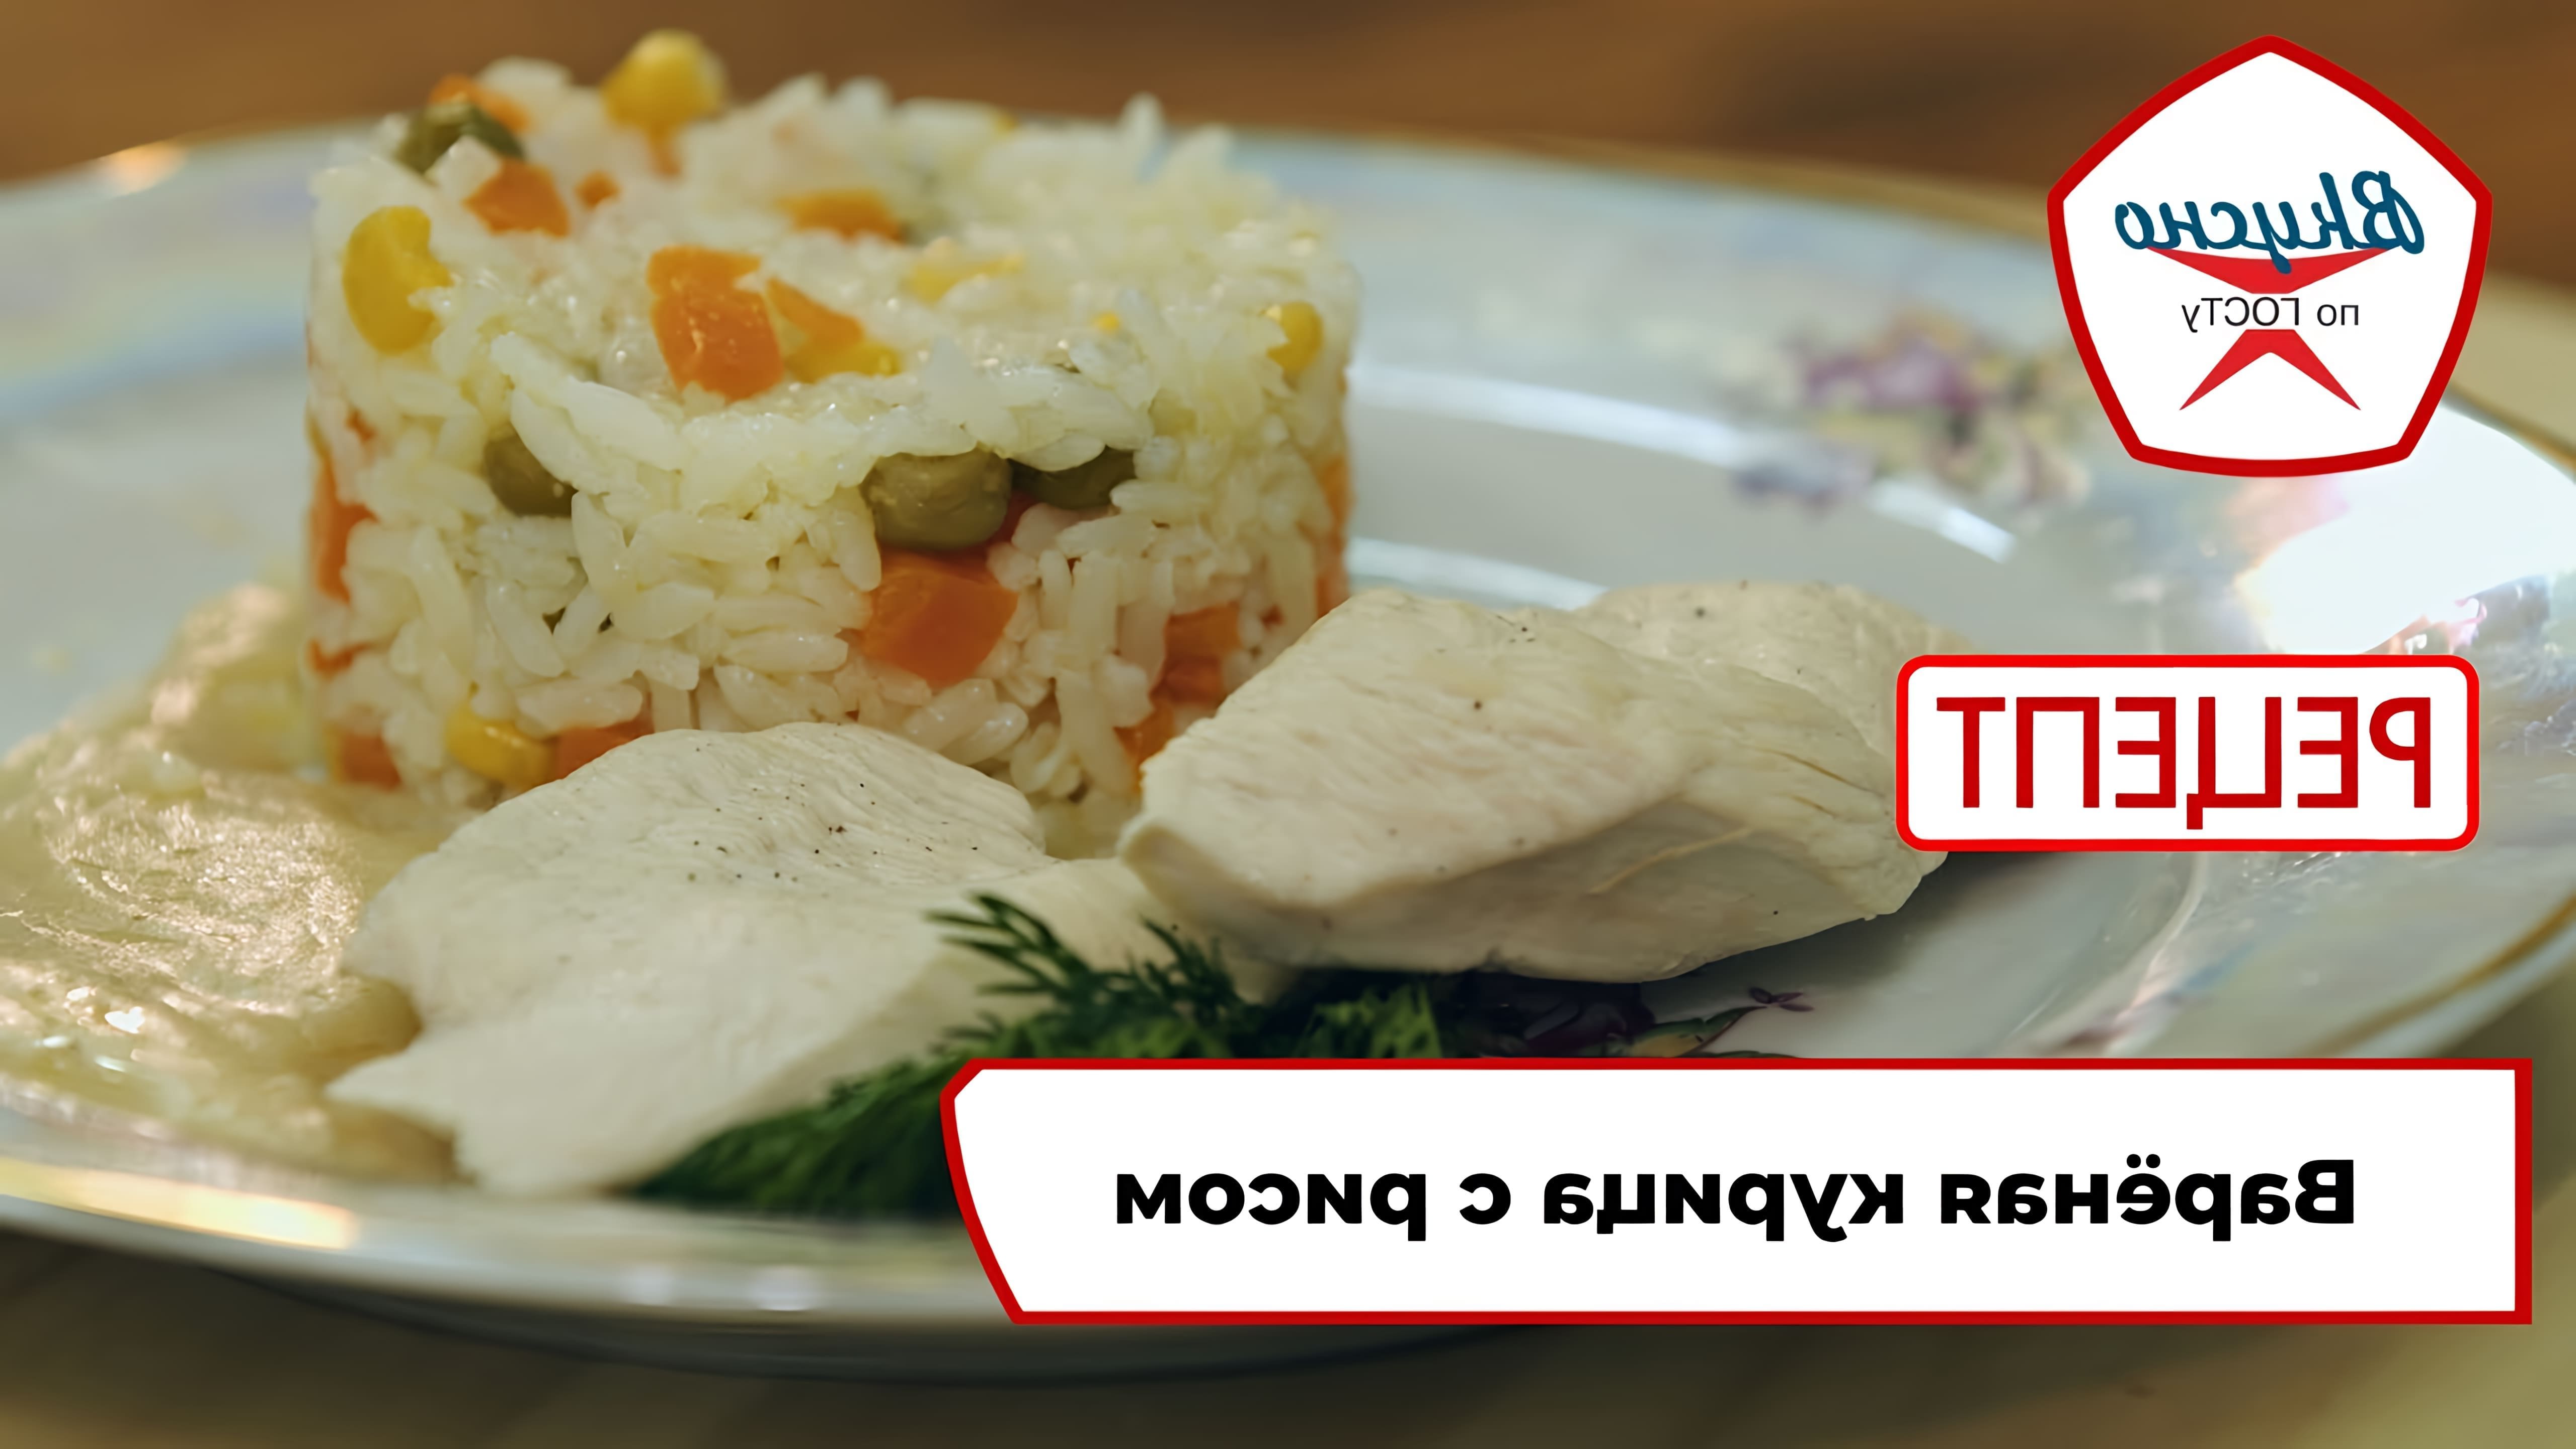 В этом видео демонстрируется рецепт варёной курицы с рисом